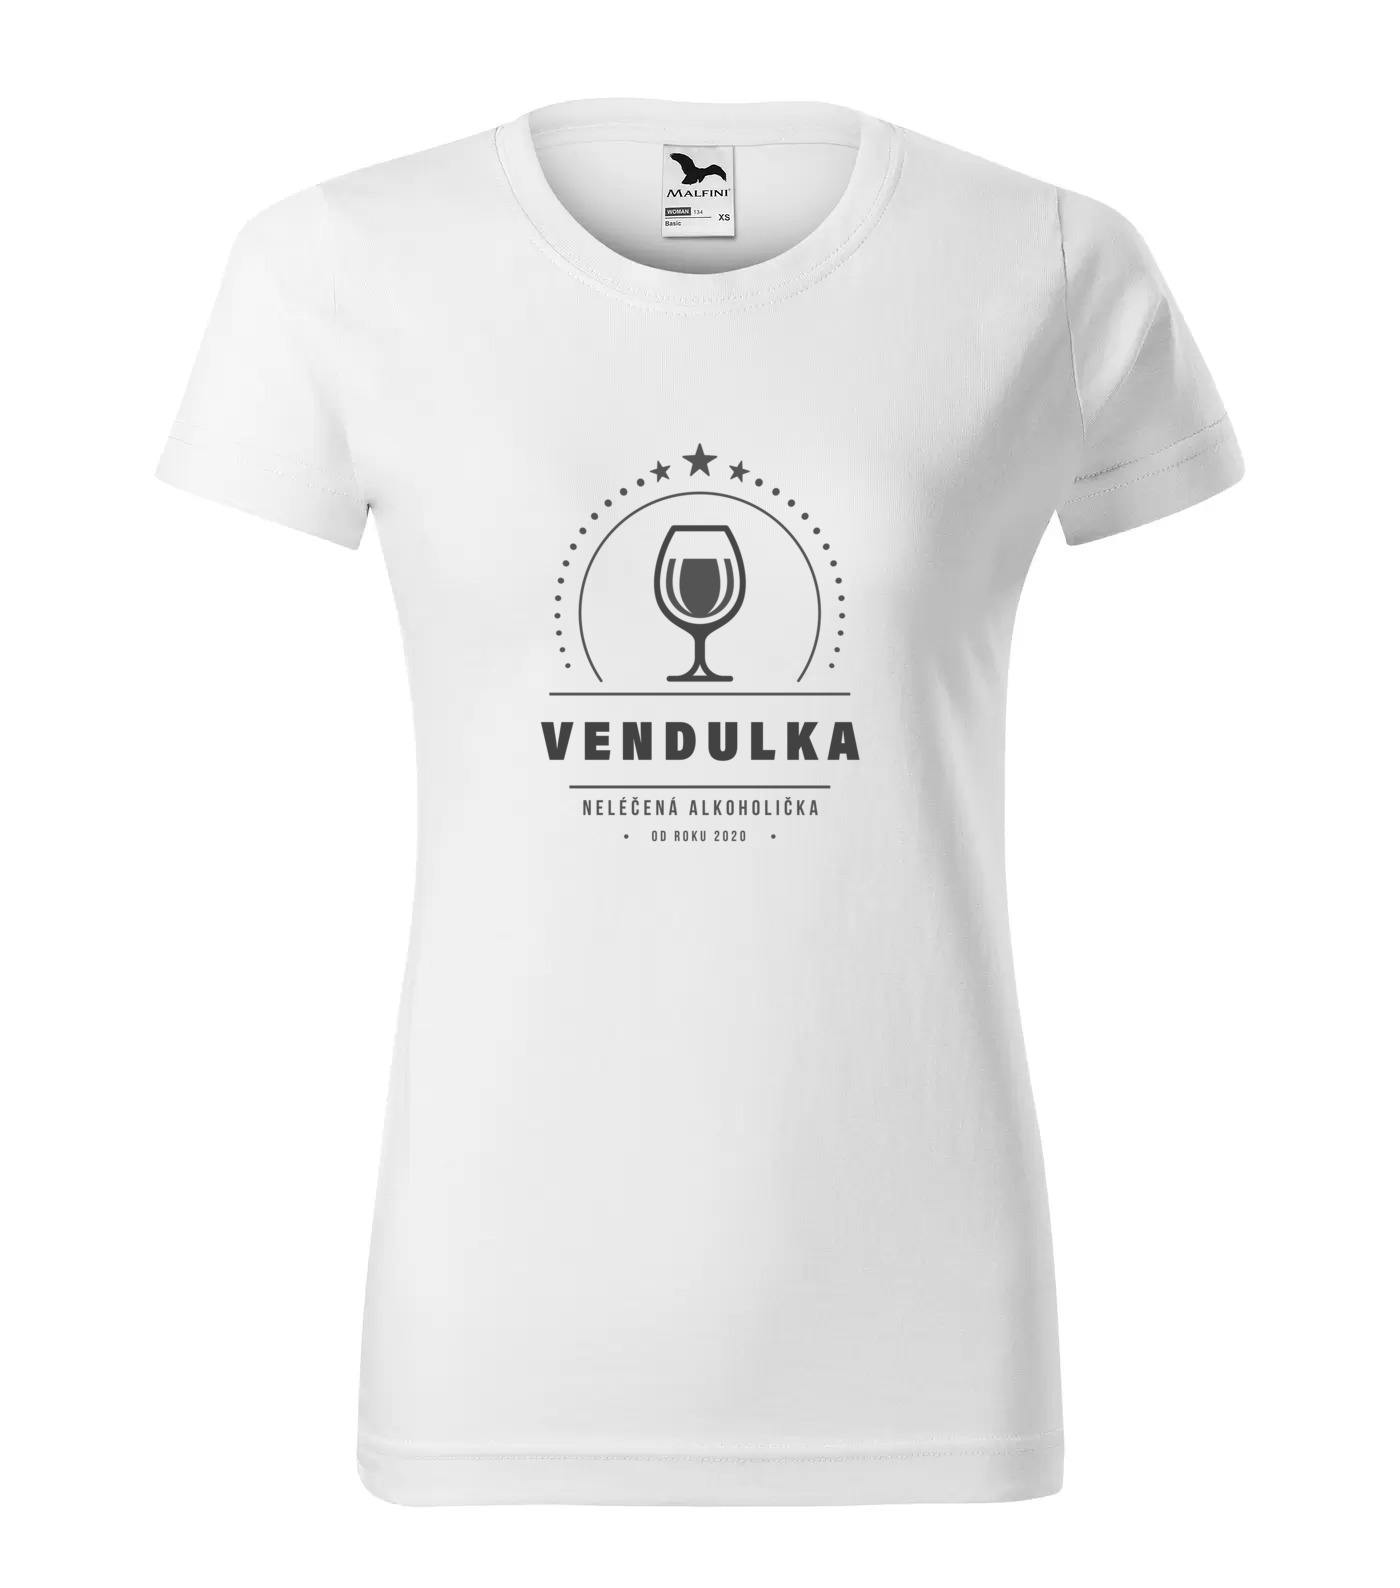 Tričko Alkoholička Vendulka